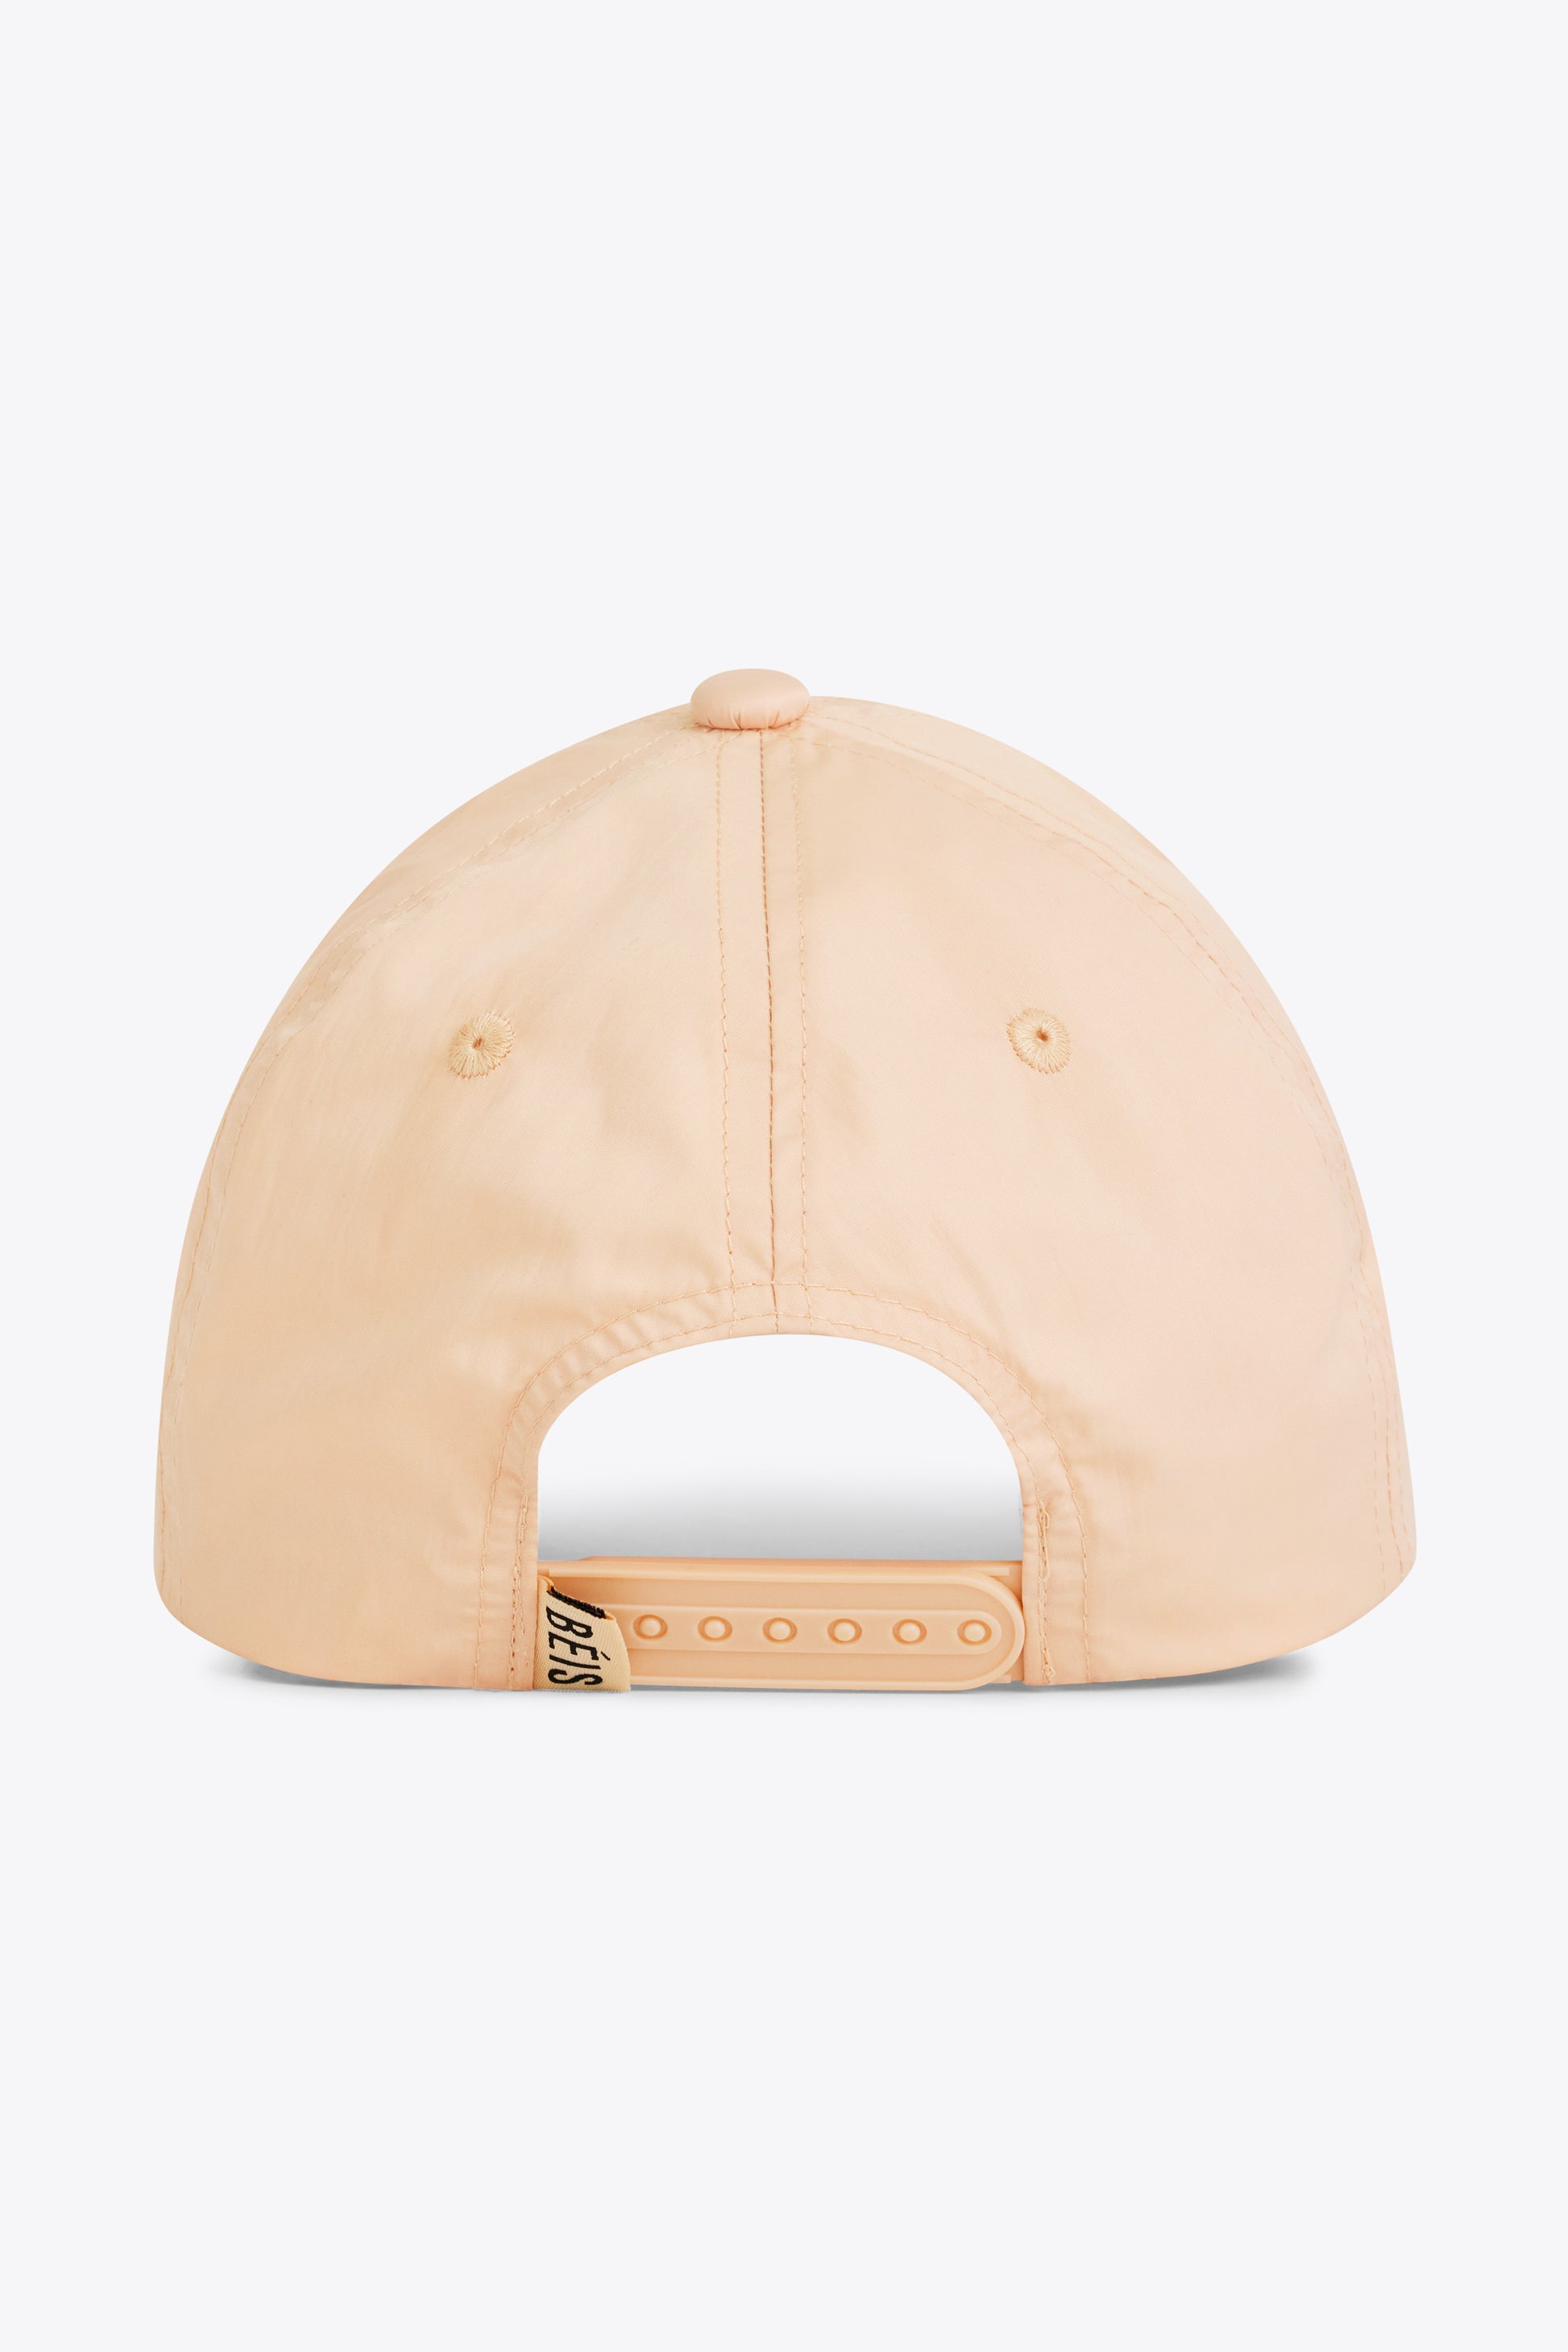 Béis 'The BÉISball Cap' in Beige - Basic Beige Baseball Hat